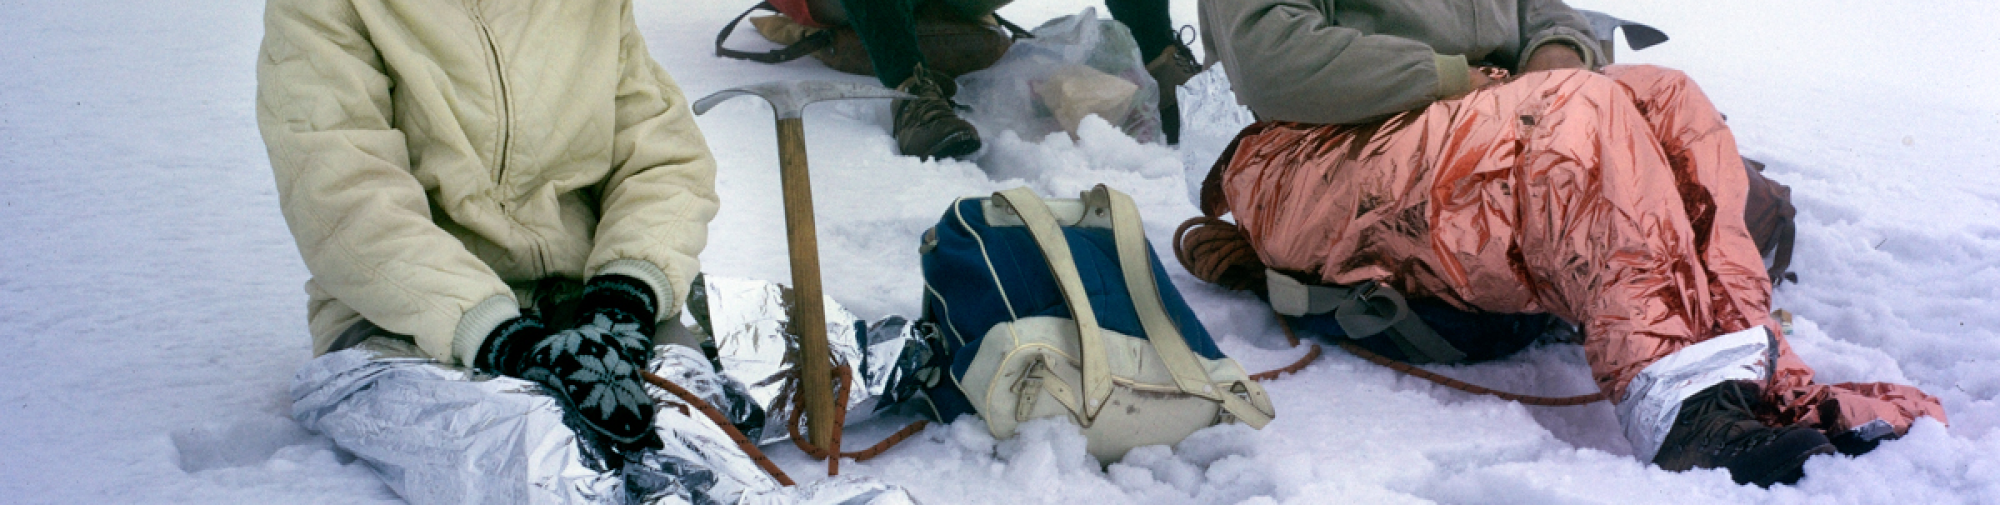 Les jambes enveloppées dans du film plastique, la cordée se repose dans la neige Suisse, 1966 Photographe:in : Dölf Reist © Musée Alpin Suisse